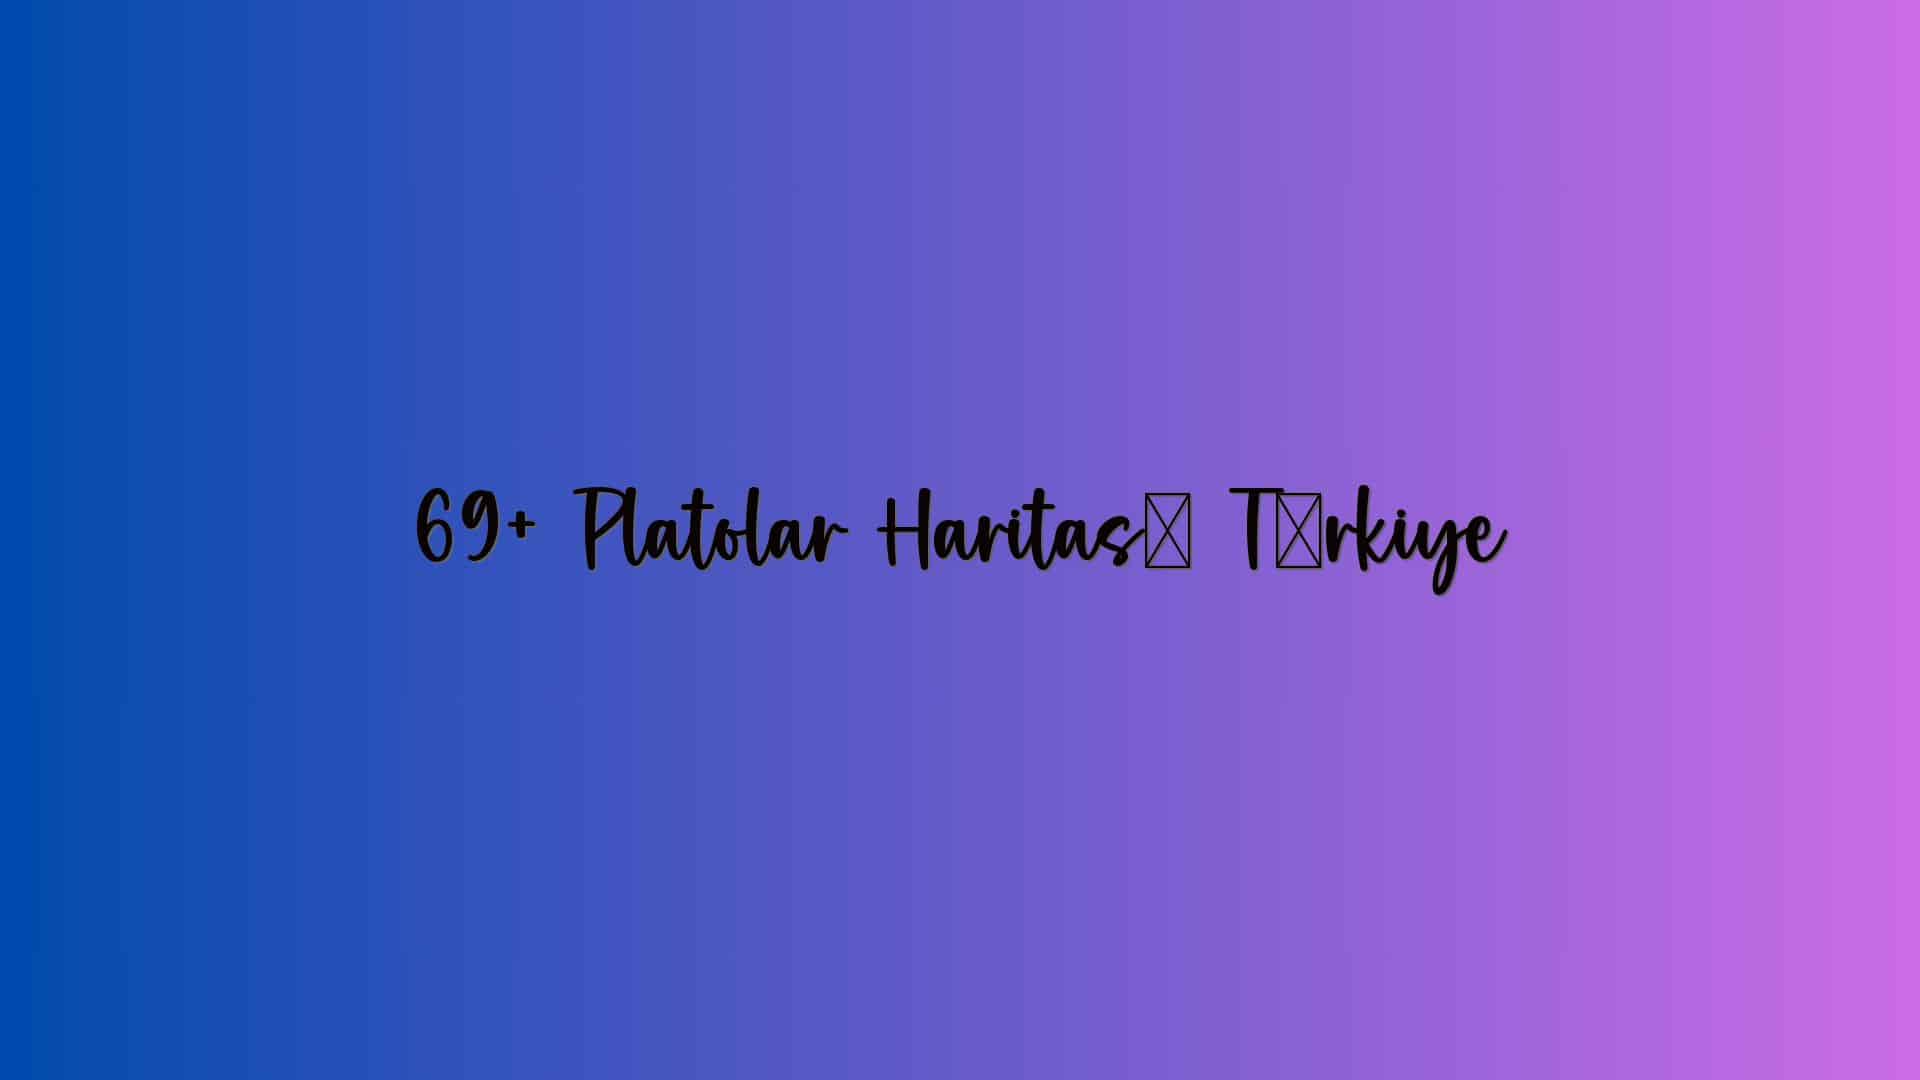 69+ Platolar Haritası Türkiye